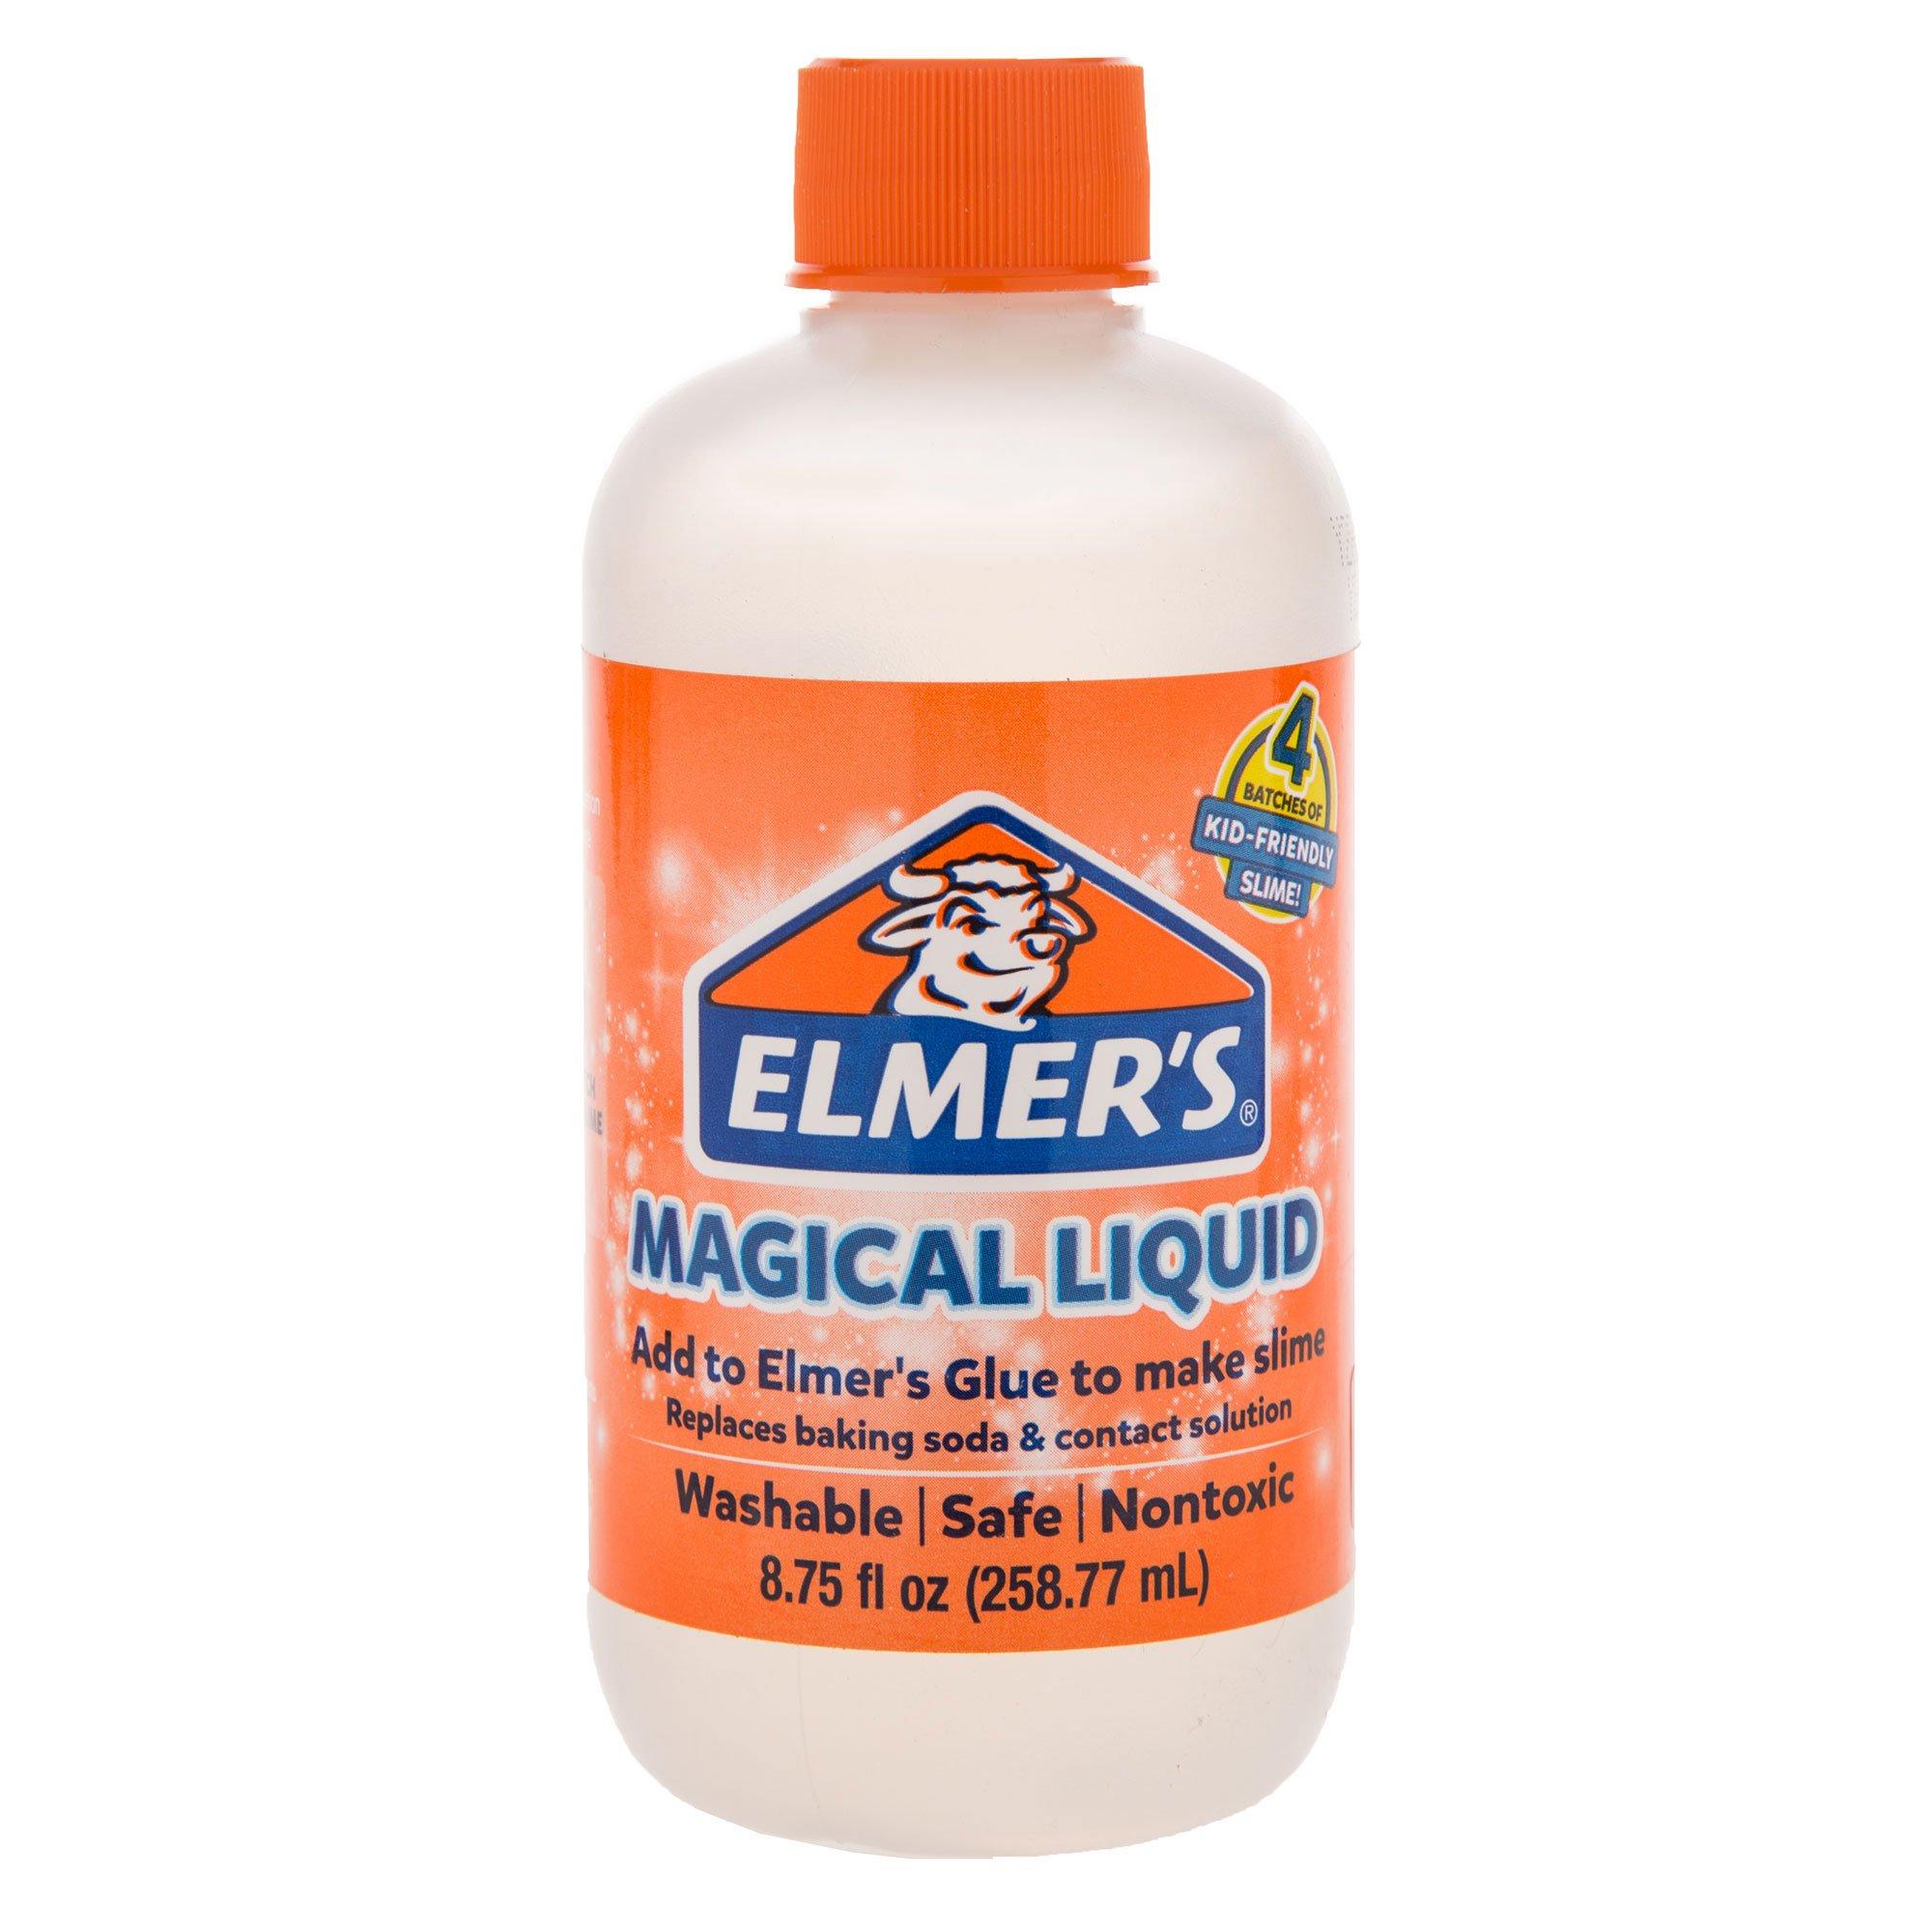 Elmer's Magical Liquid, Hobby Lobby